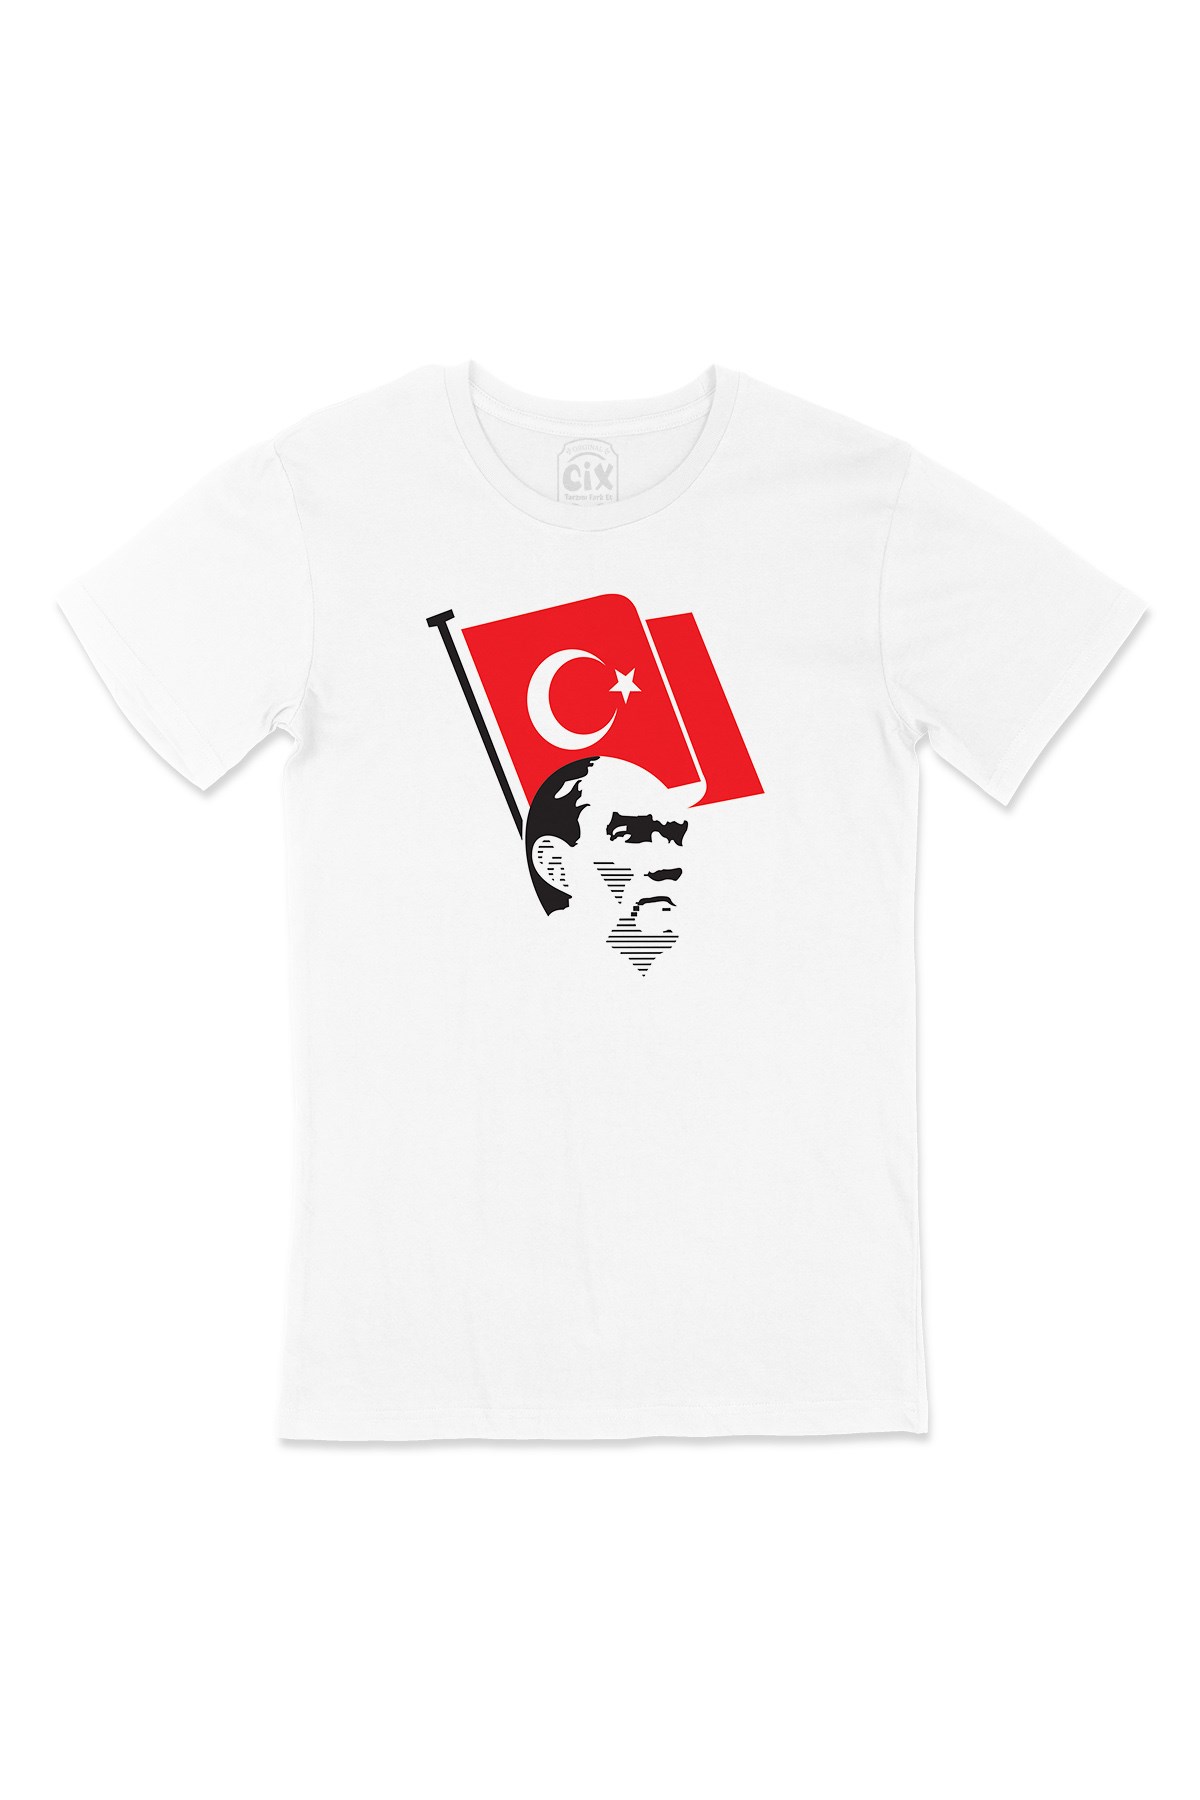 Cix Atatürk ve Türk Bayraklı Tişört - Ücretsiz Kargo